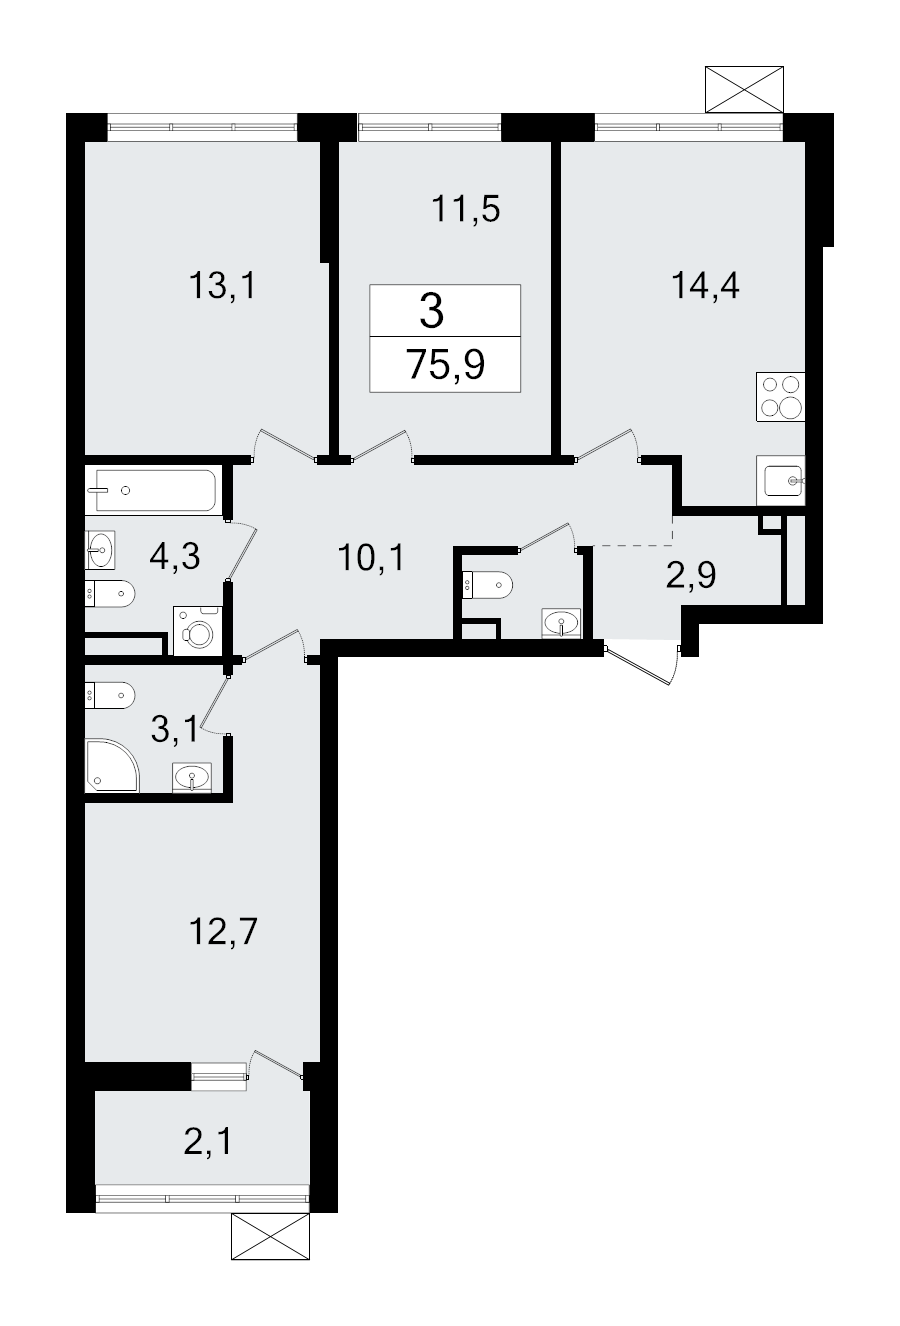 3-комнатная квартира, 75.9 м² в ЖК "А101 Всеволожск" - планировка, фото №1